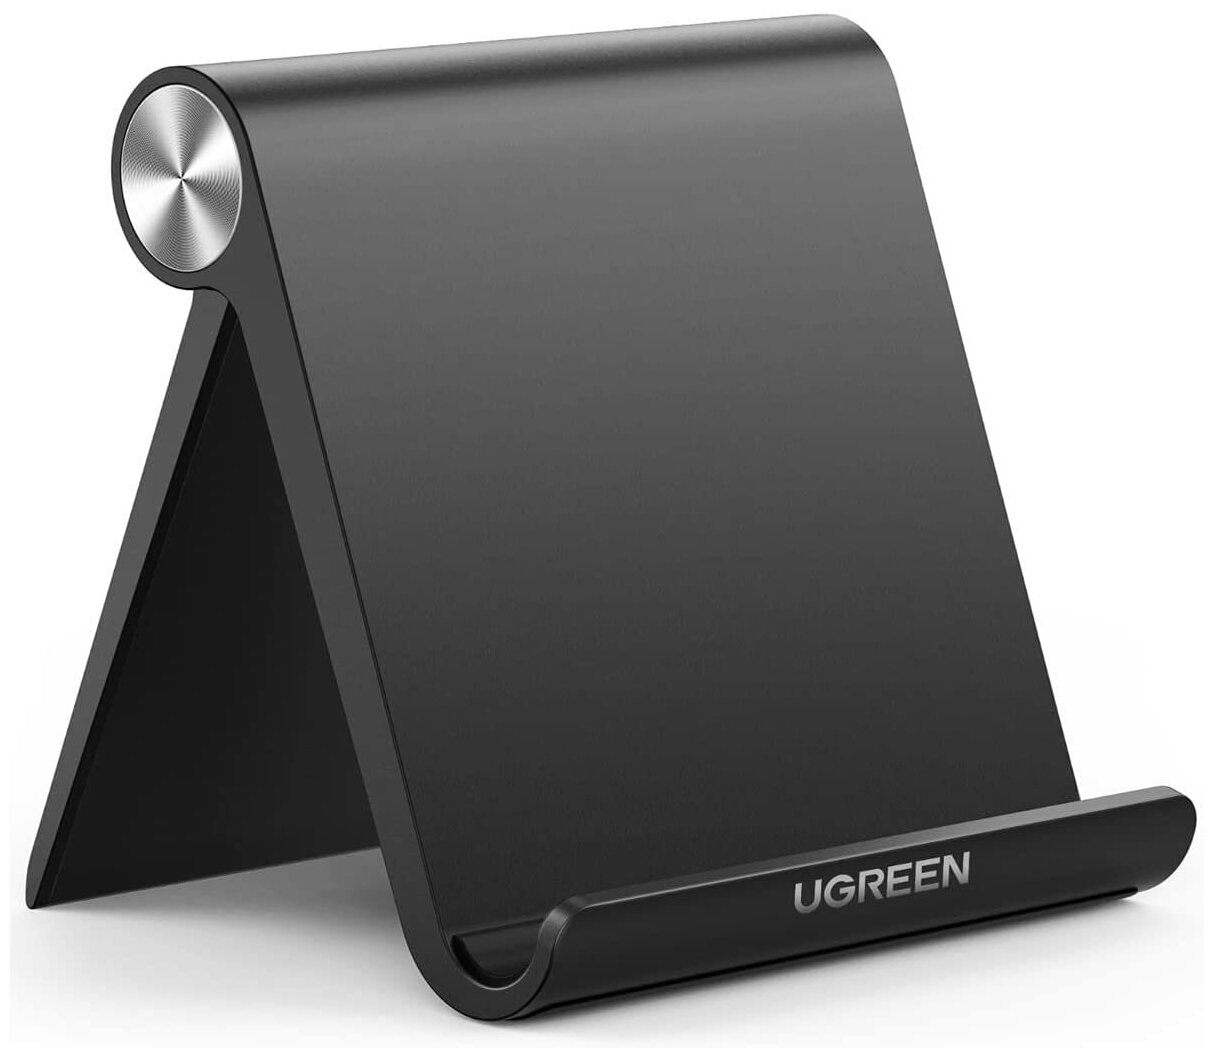 Настольная подставка для планшета Ugreen, цвет черный (50748)